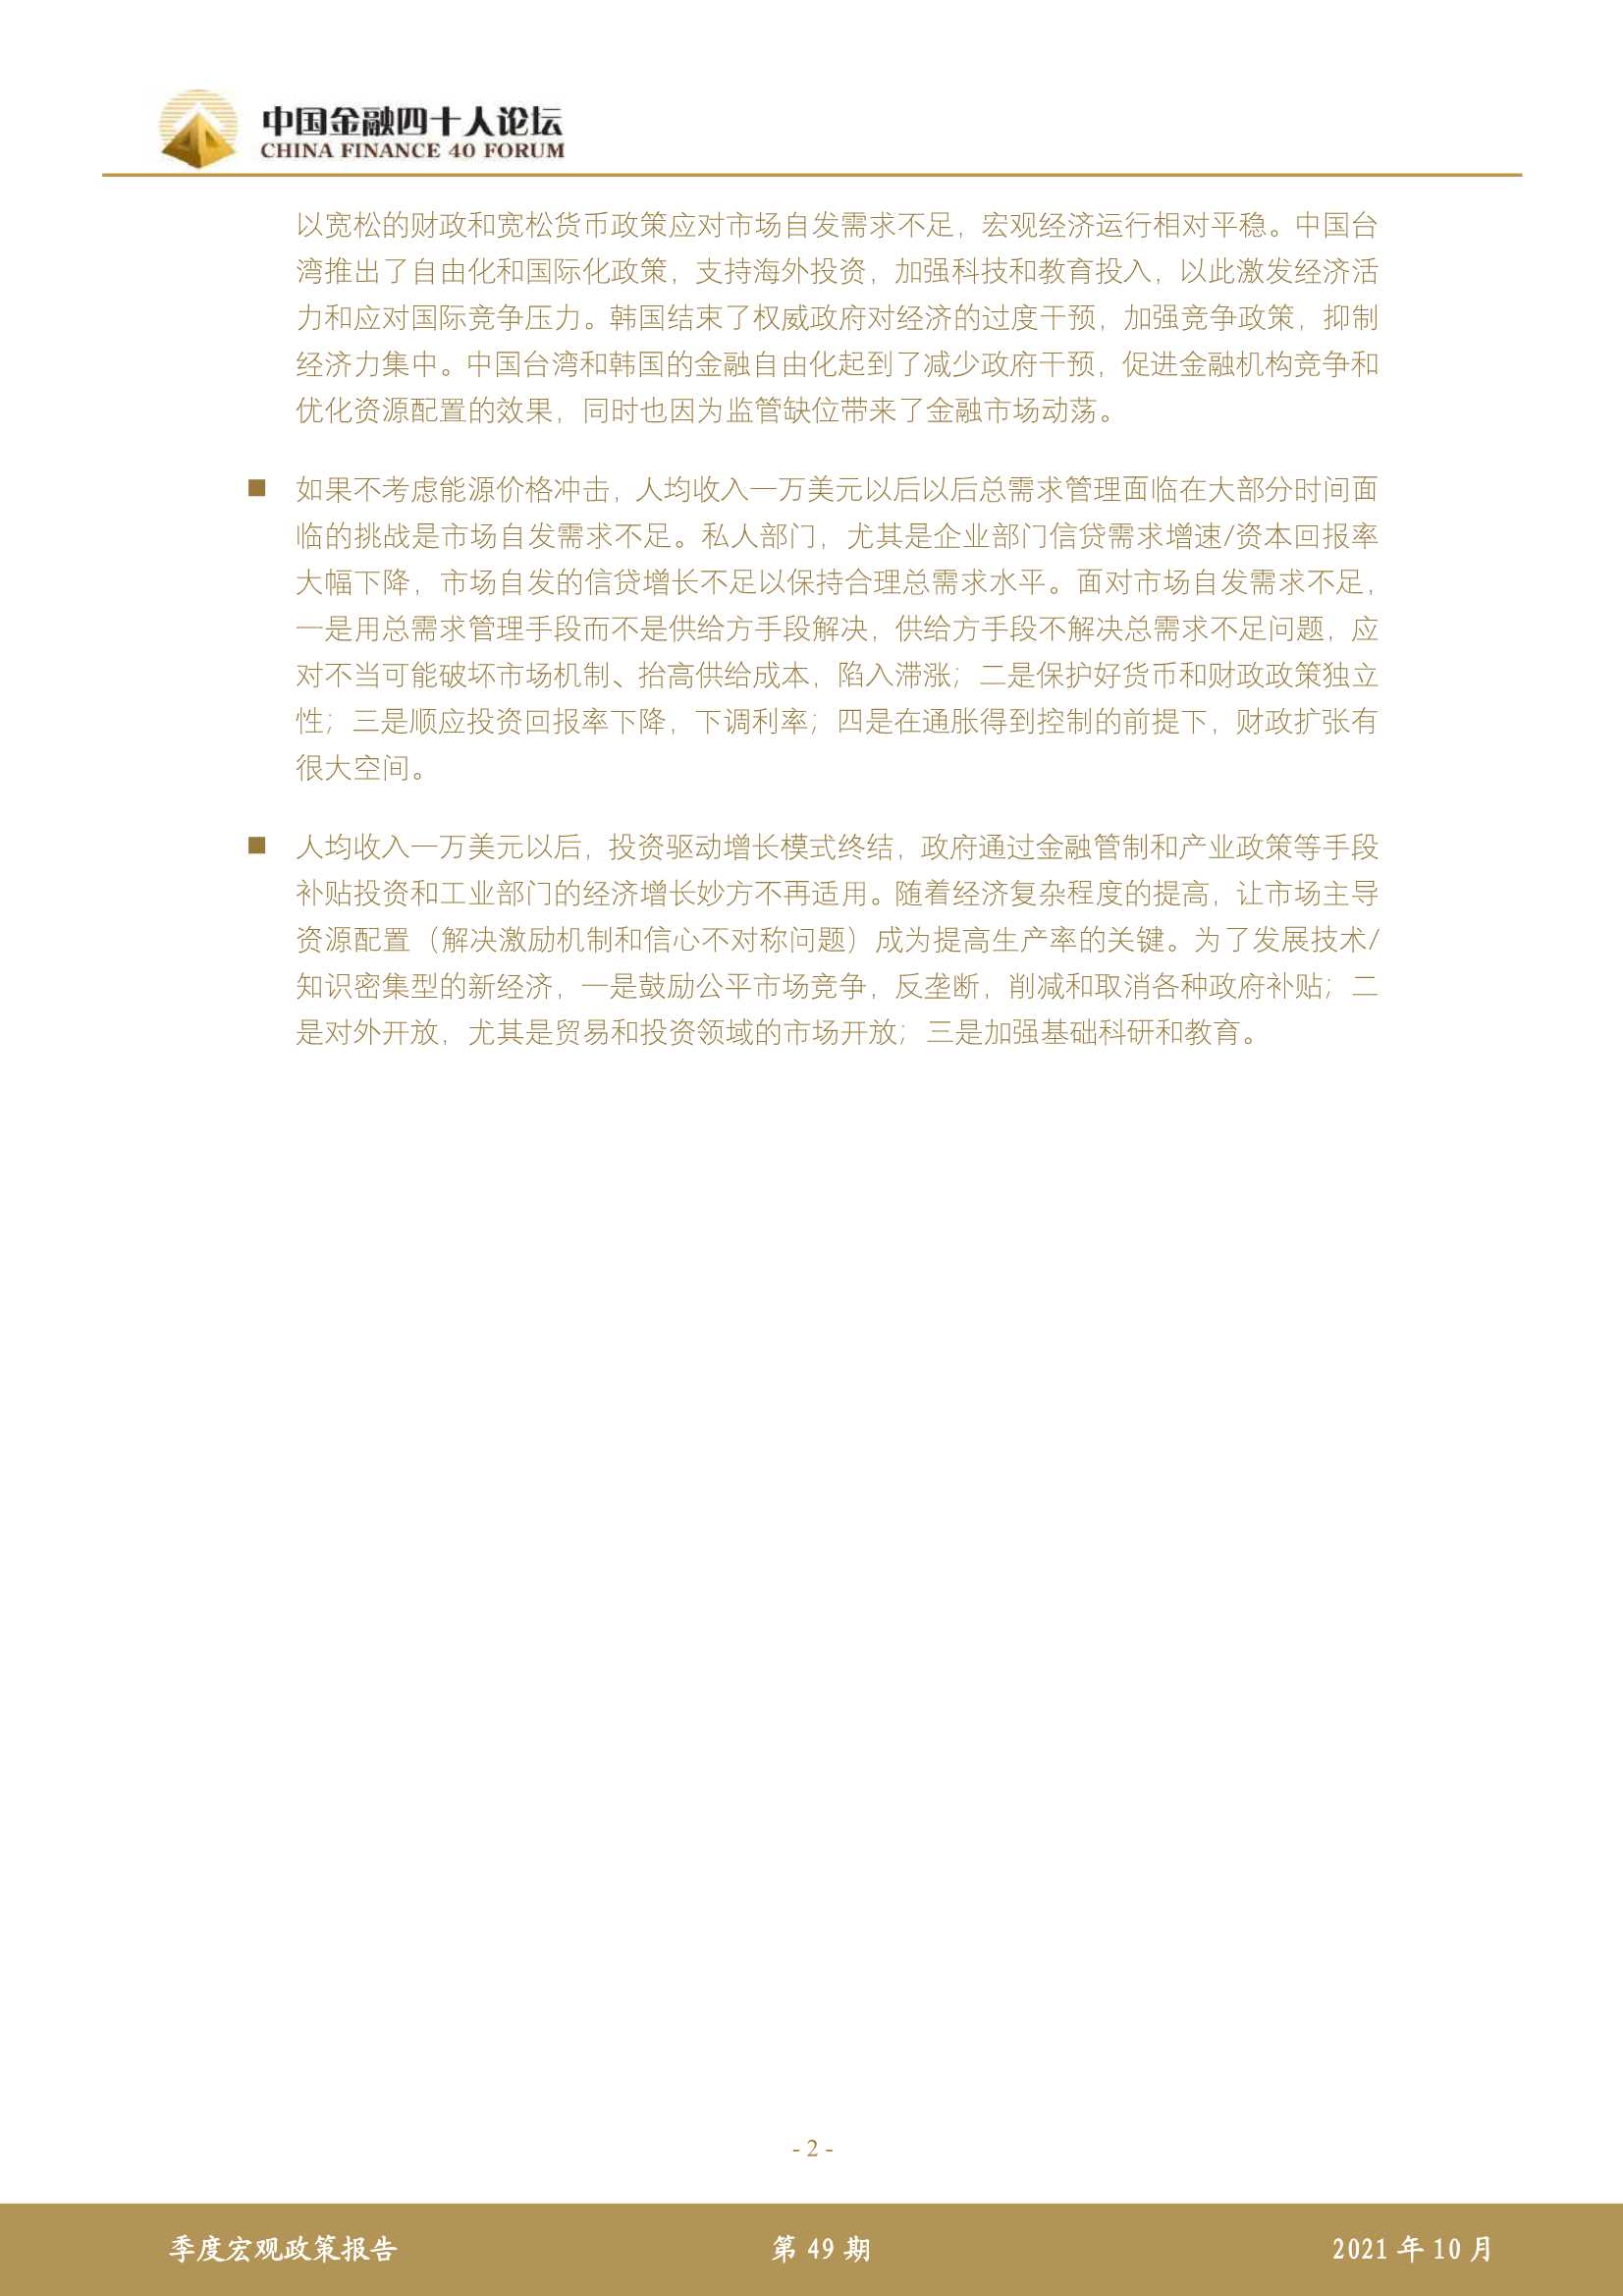 中国金融四十人论坛-2021 年第三季度宏观政策报告-2021.12-16页